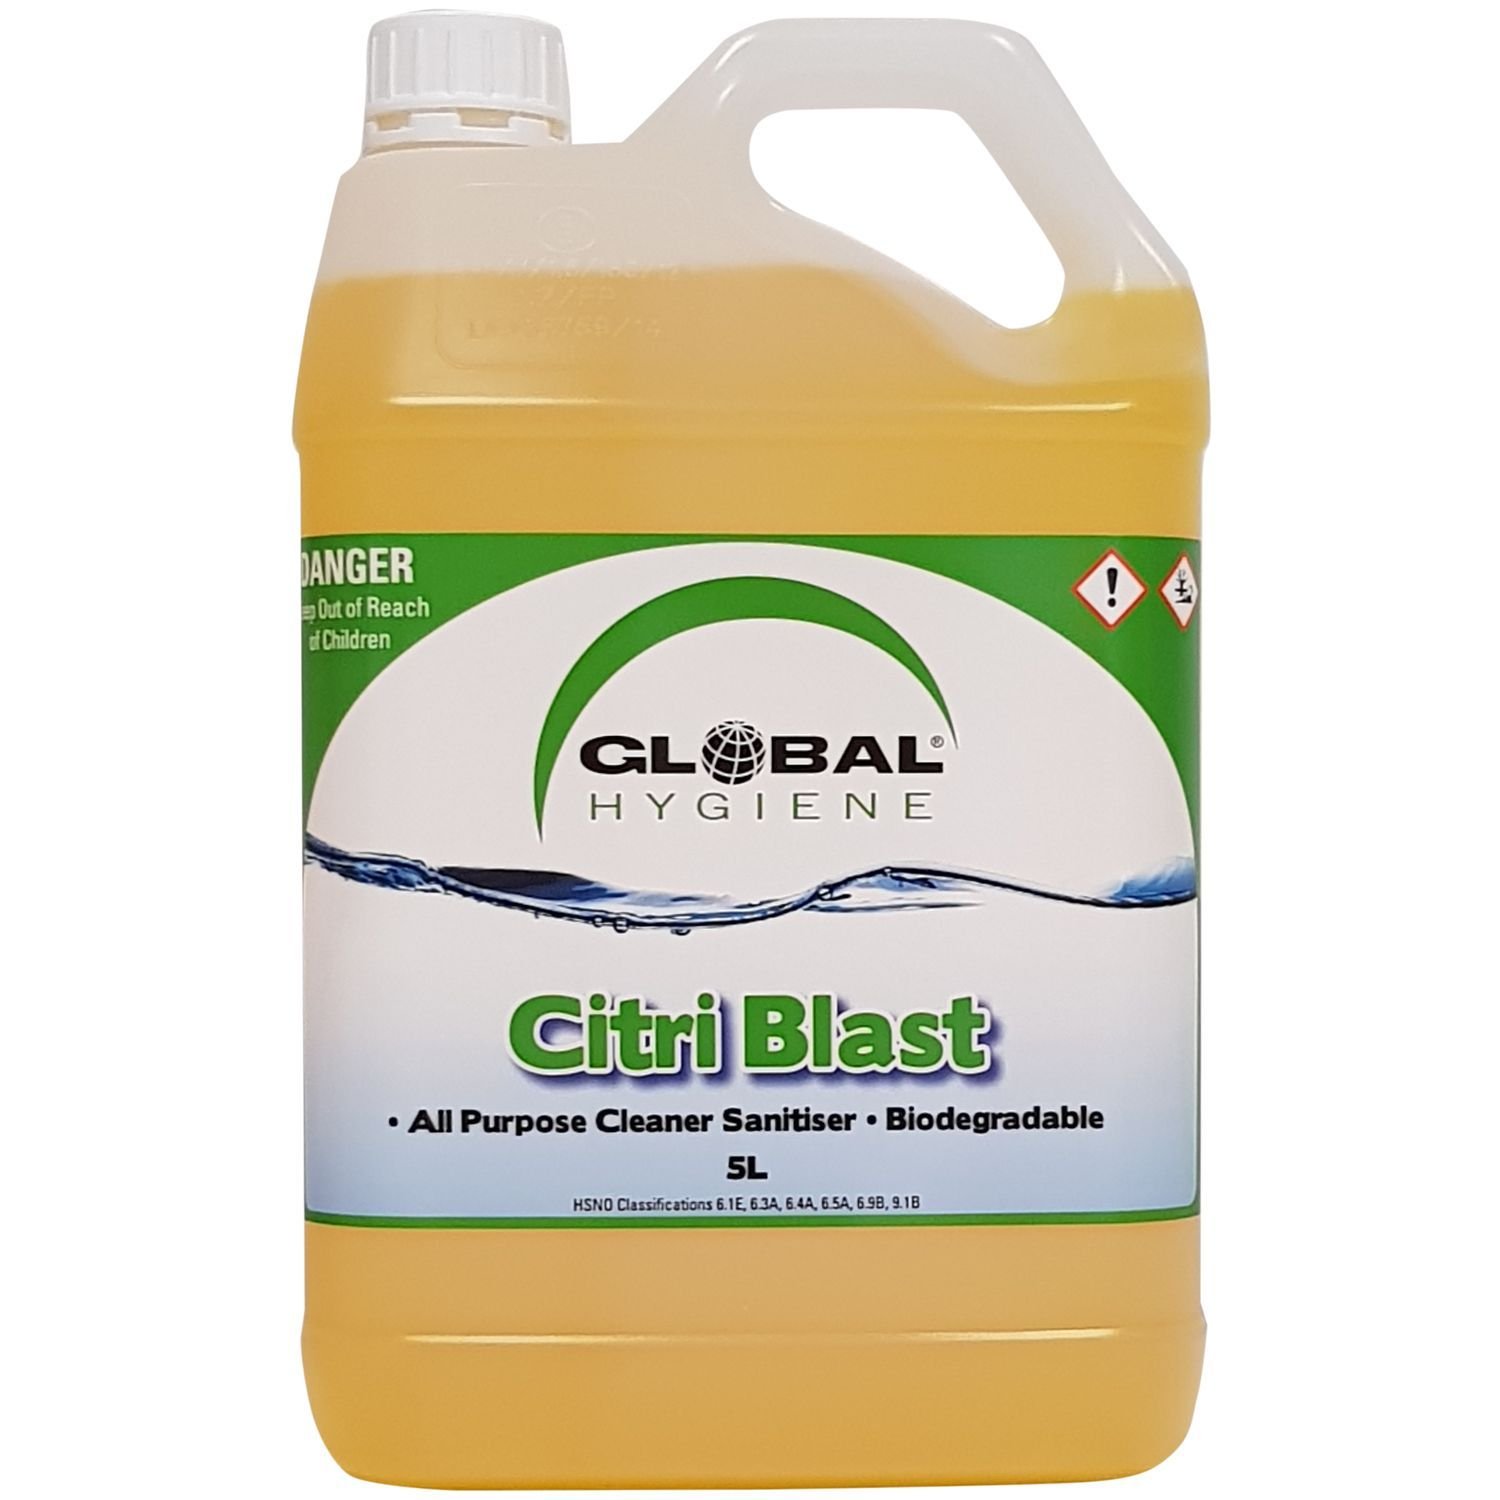 Global Citri Blast Cleaner Degreaser Sanitiser 5L